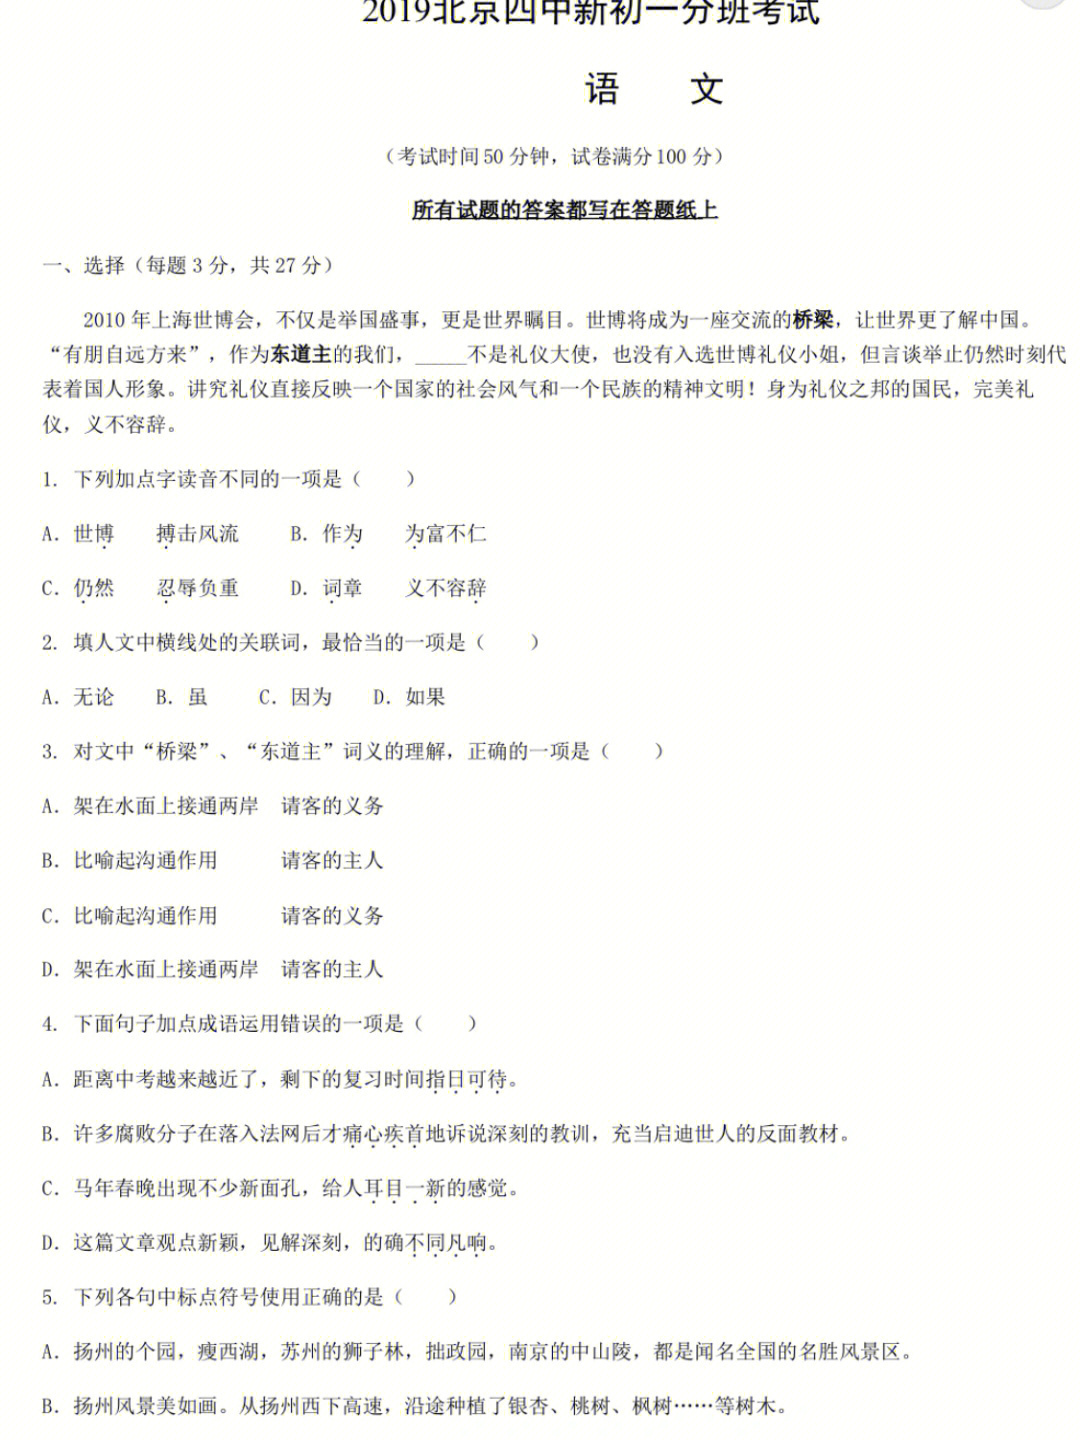 北京四中2019年初一新生分班语文试卷